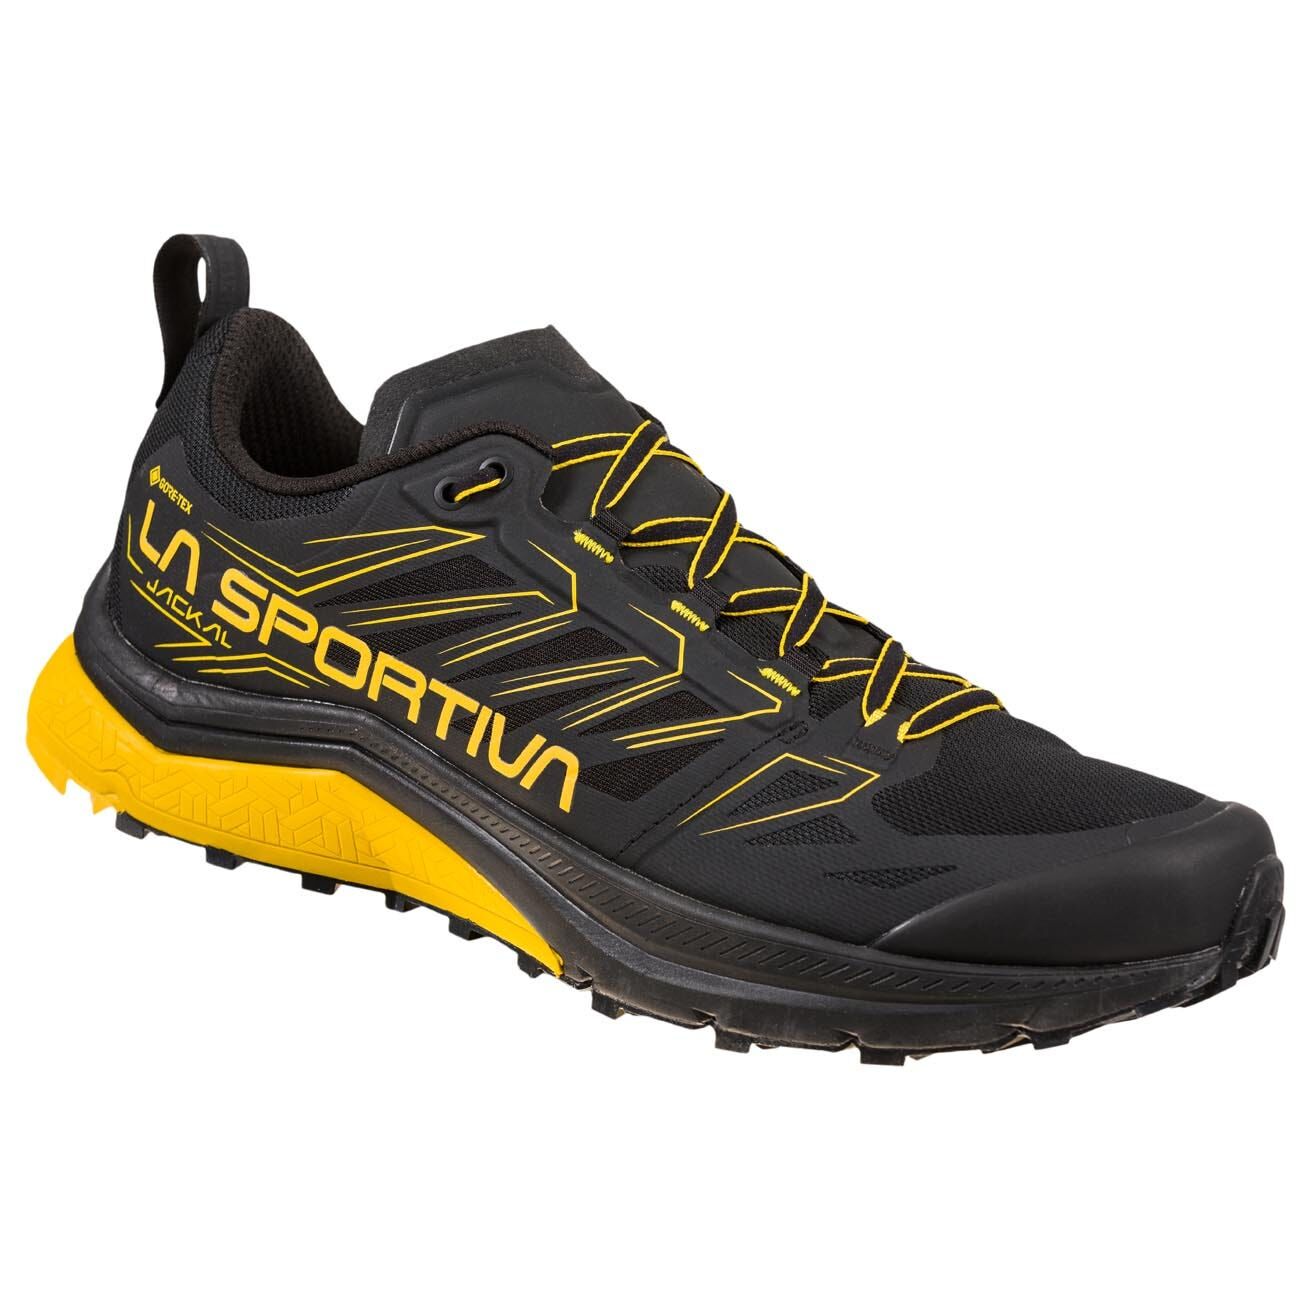 La Sportiva Jackal GTX - Trail running shoes - Men's